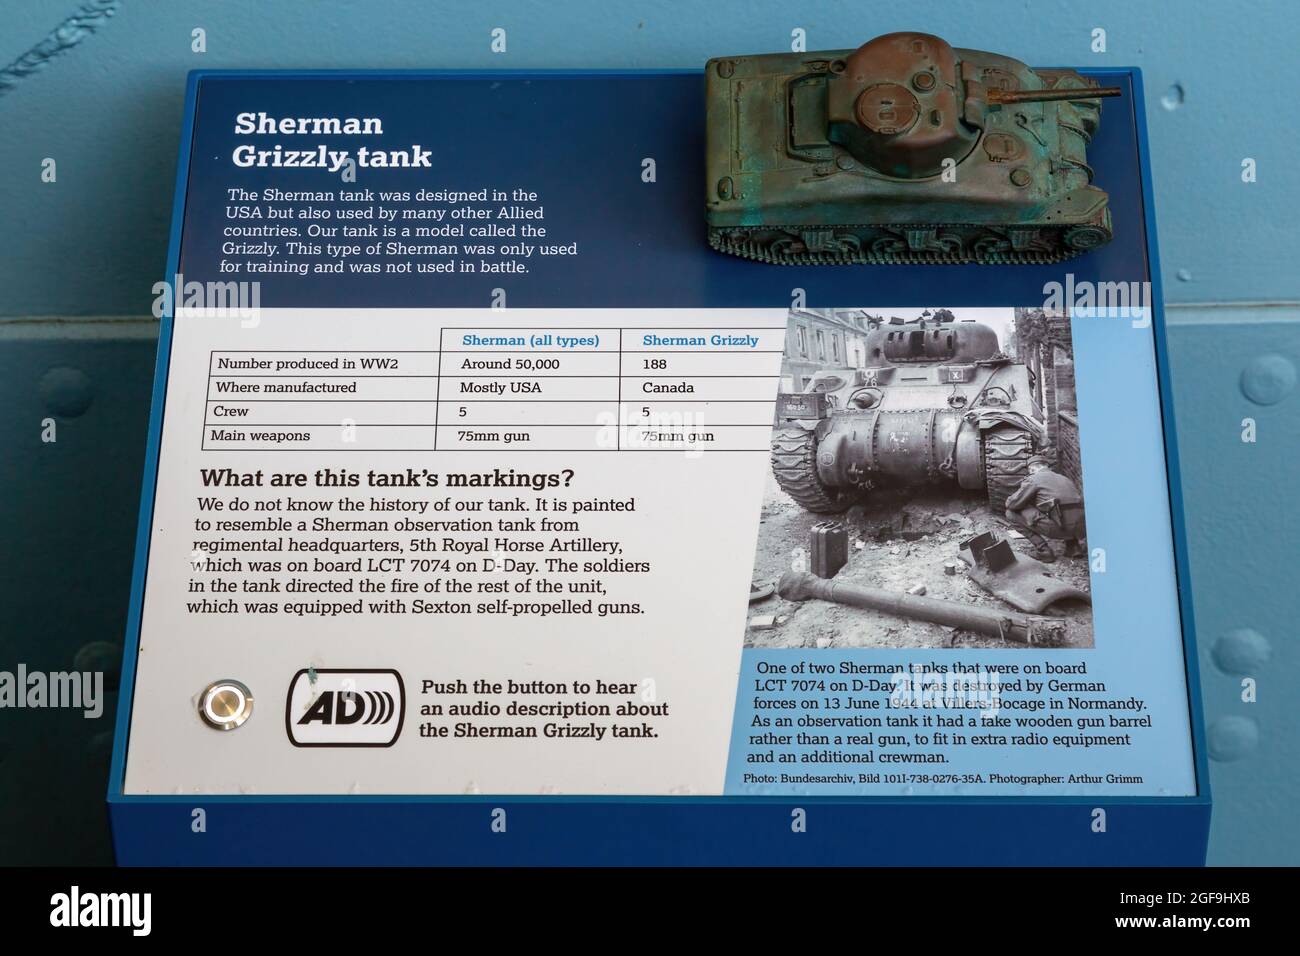 08-24-2021 Portsmouth, Hampshire, Royaume-Uni, exposition de musée montrant le réservoir Sherman Grizzly avec un modèle, un réservoir utilisé dans la deuxième guerre mondiale et le jour J. Banque D'Images